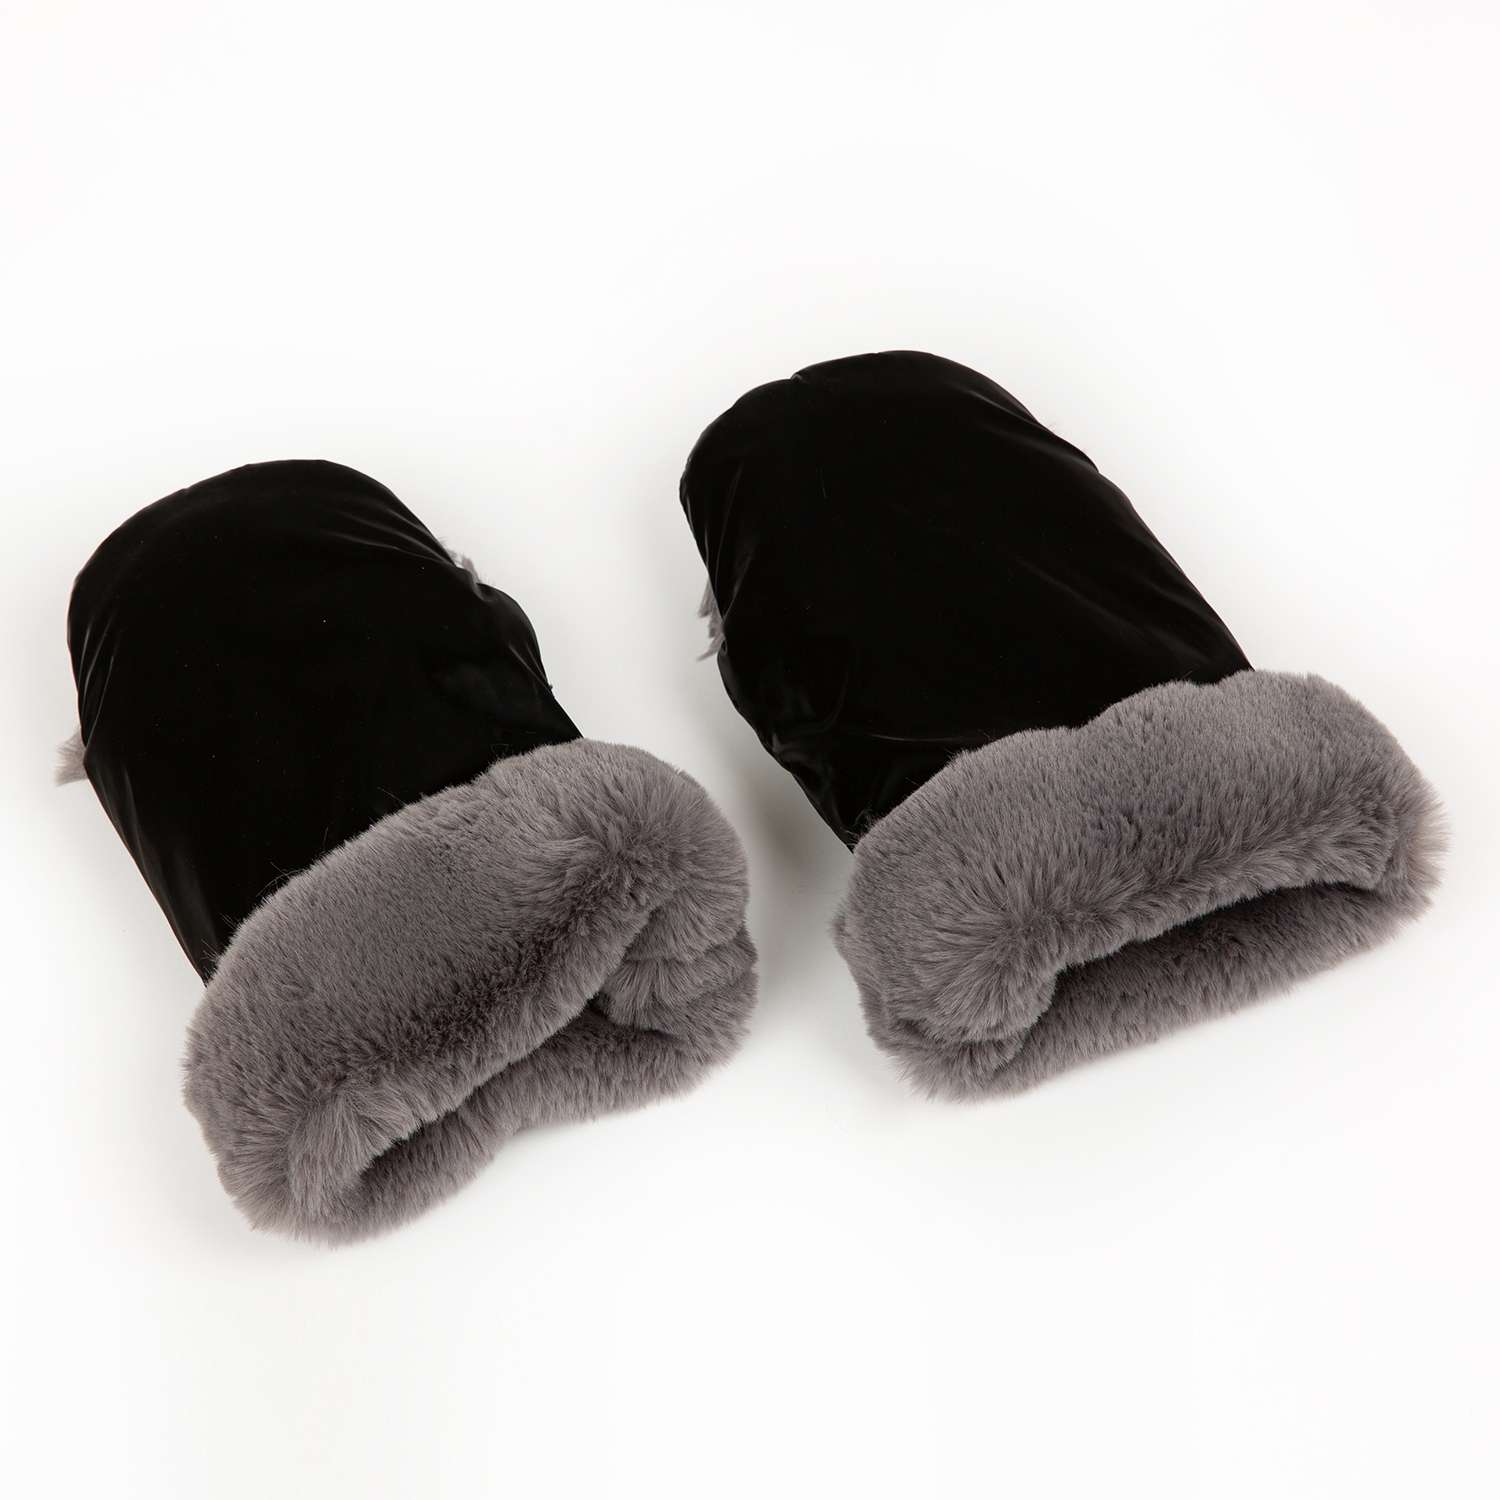 Муфта-рукавички для коляски inlovery Lakke/черный МРЛ01-003 - фото 3